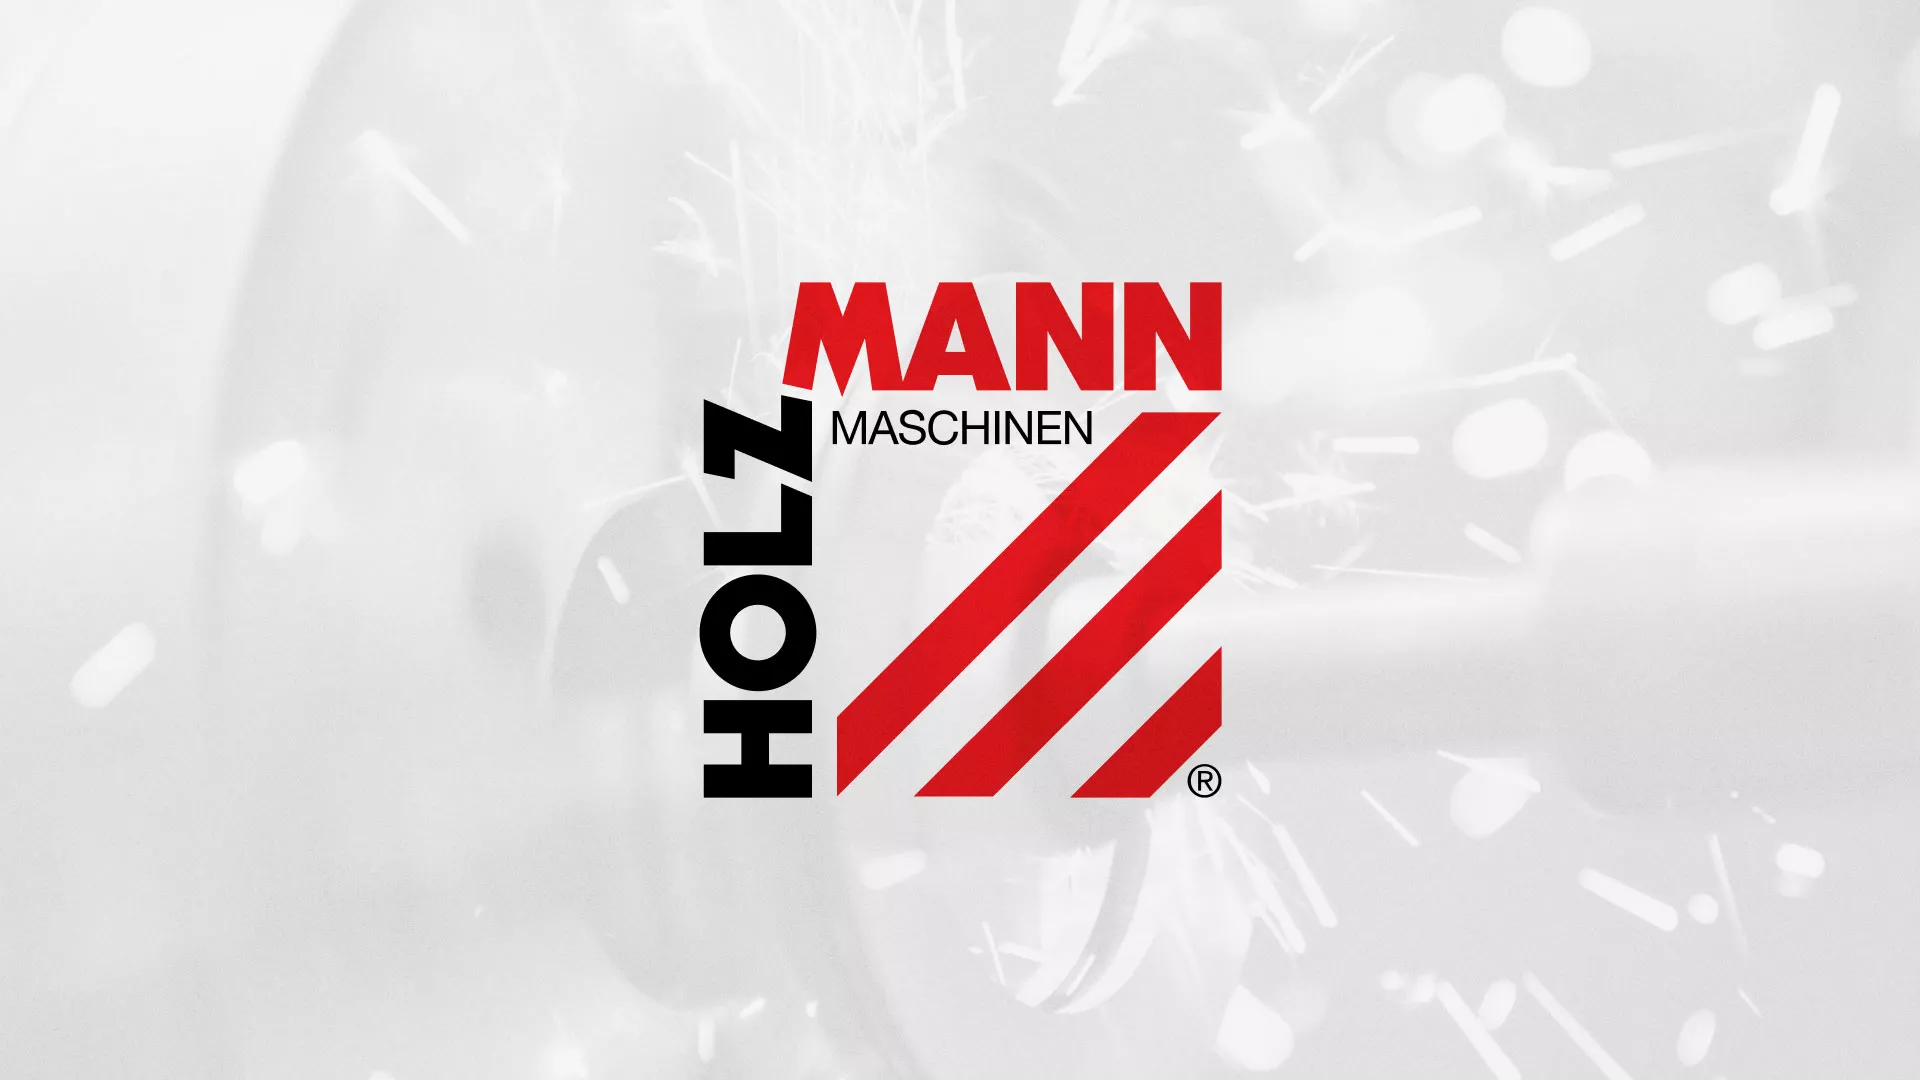 Создание сайта компании «HOLZMANN Maschinen GmbH» в Андреаполе